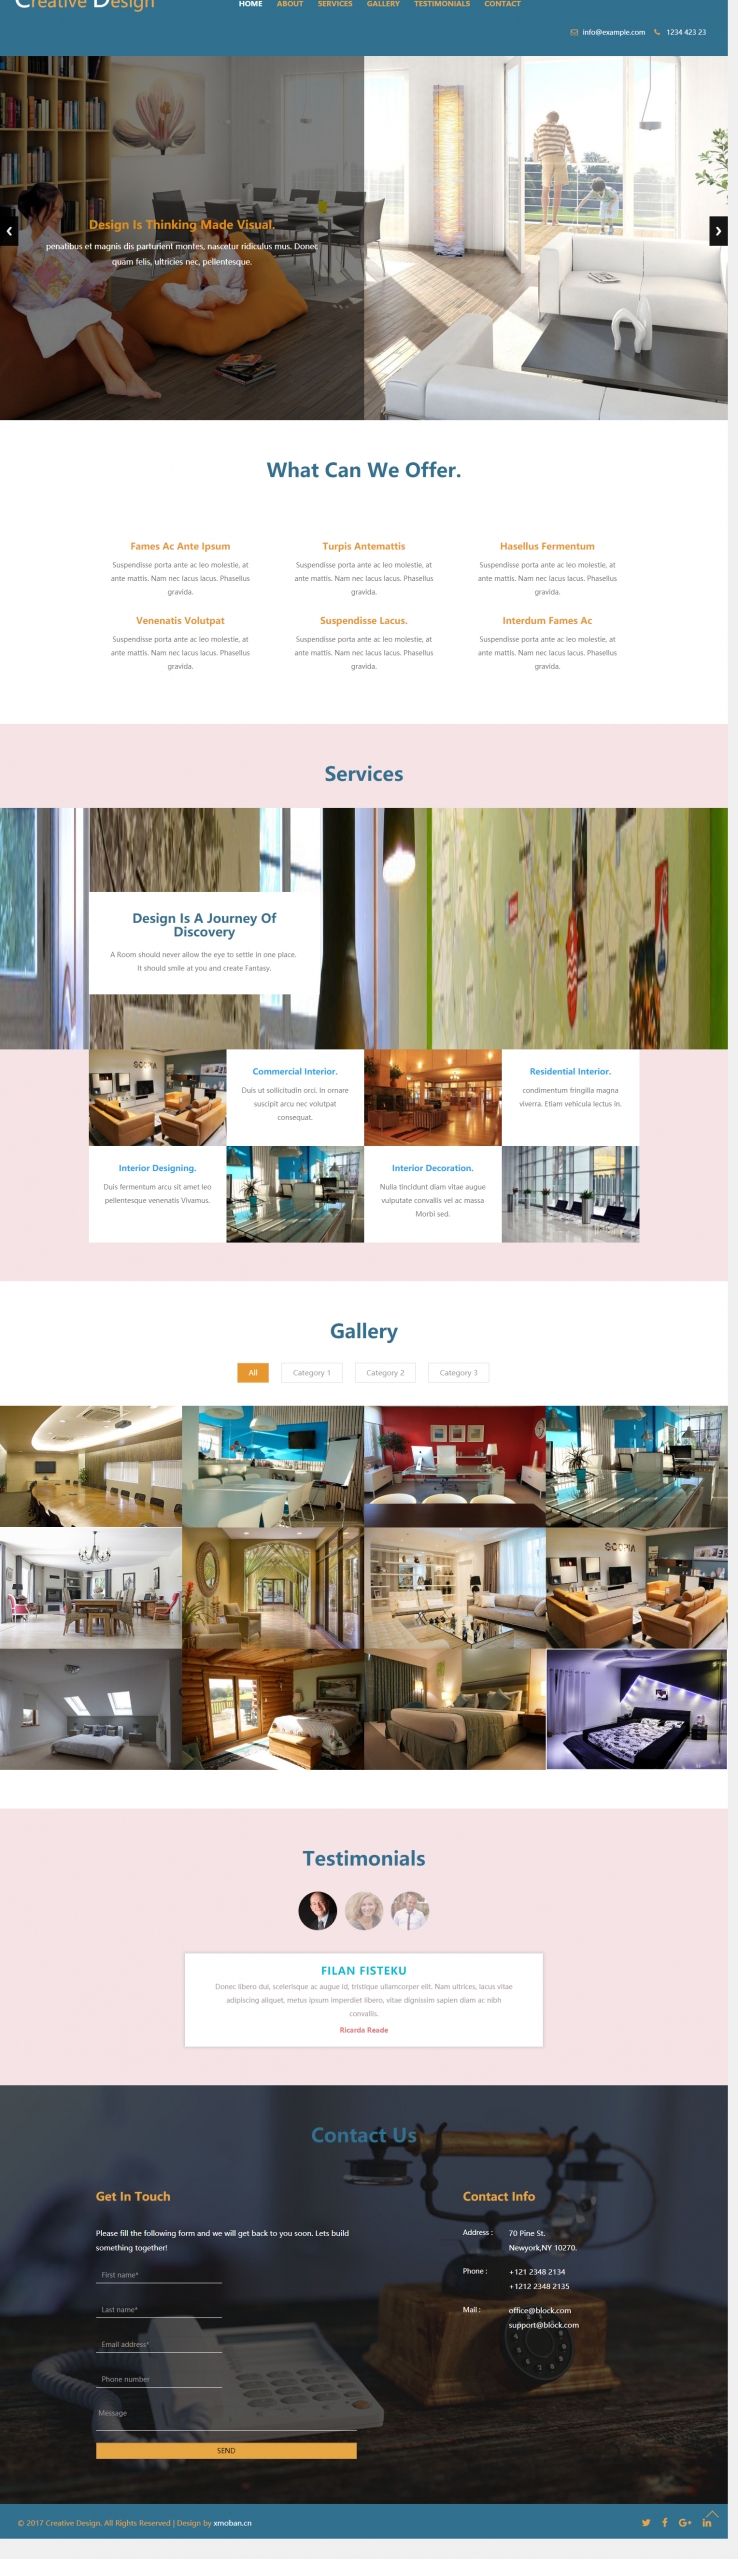 蓝色欧美风格的室内家具设计企业网站源码下载